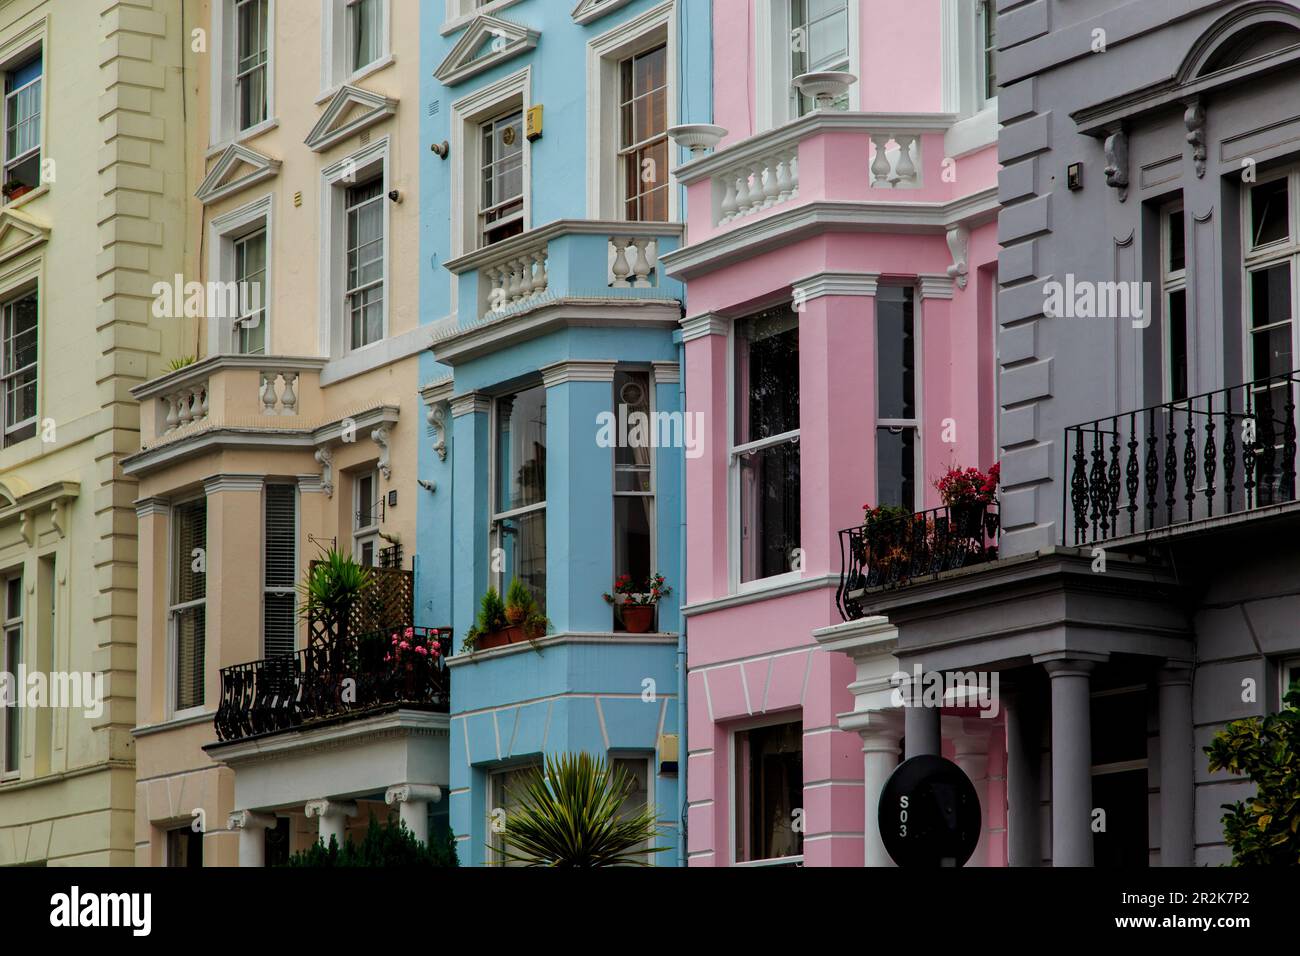 LONDRES, GRANDE-BRETAGNE - 20 SEPTEMBRE 2014 : c'est l'architecture et les maisons de coloriage multicolores dans le quartier désormais prestigieux de Notting Hill. Banque D'Images